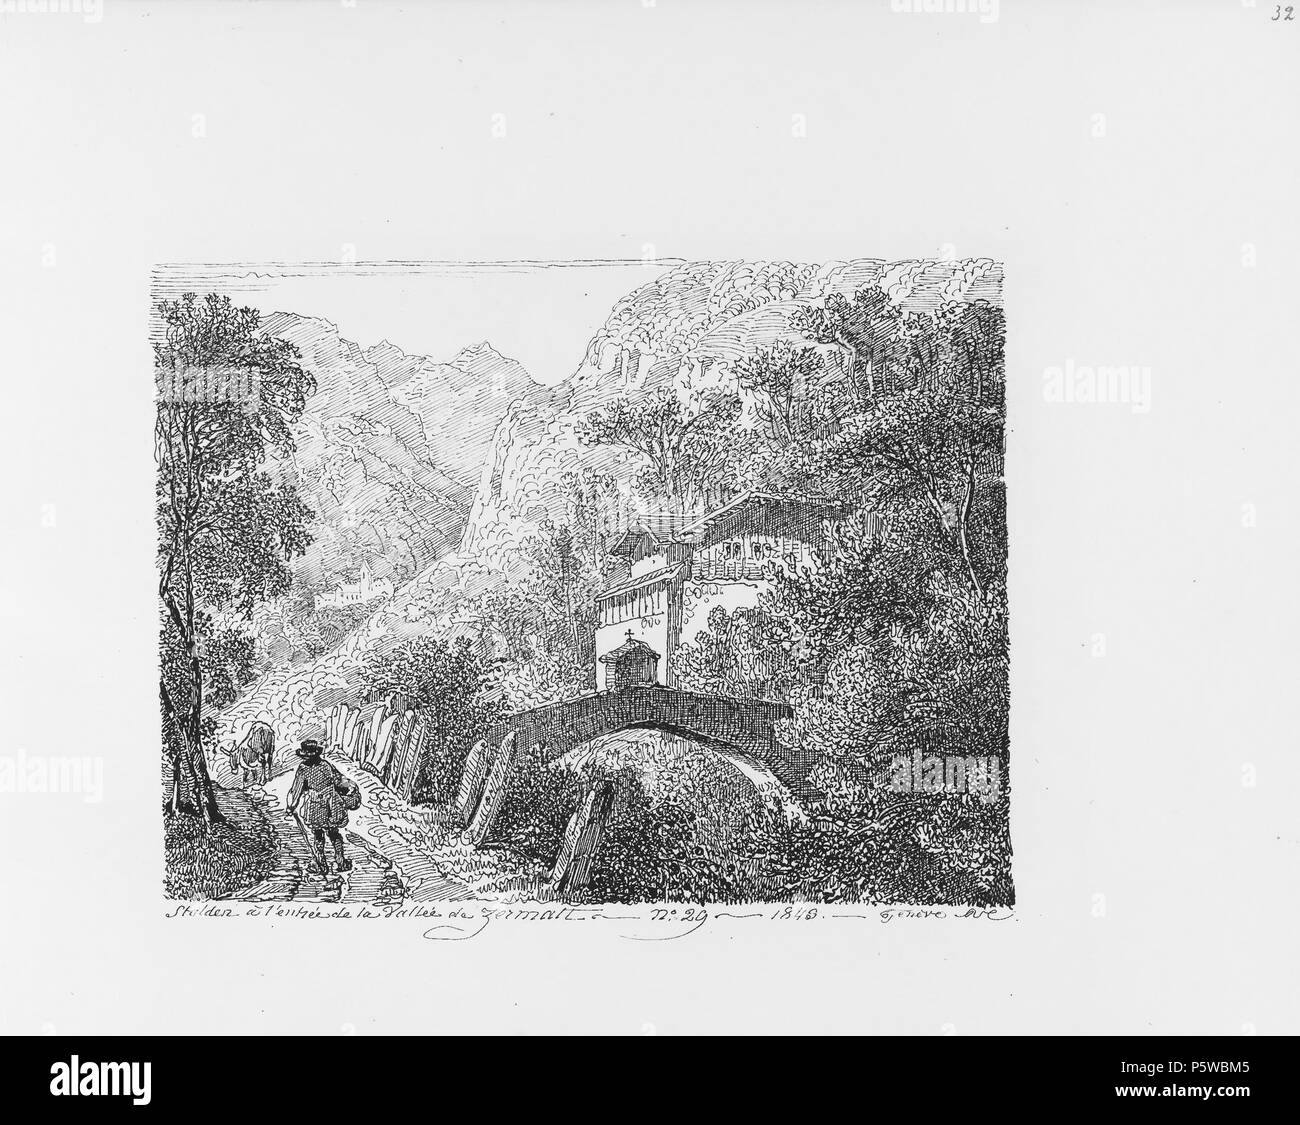 322 CH-NB-Voyage autour du Mont-Blanc dans les vallées d'Hérens de Zermatt et au Grimsel 1843-nbdig-19161-031 Stock Photo